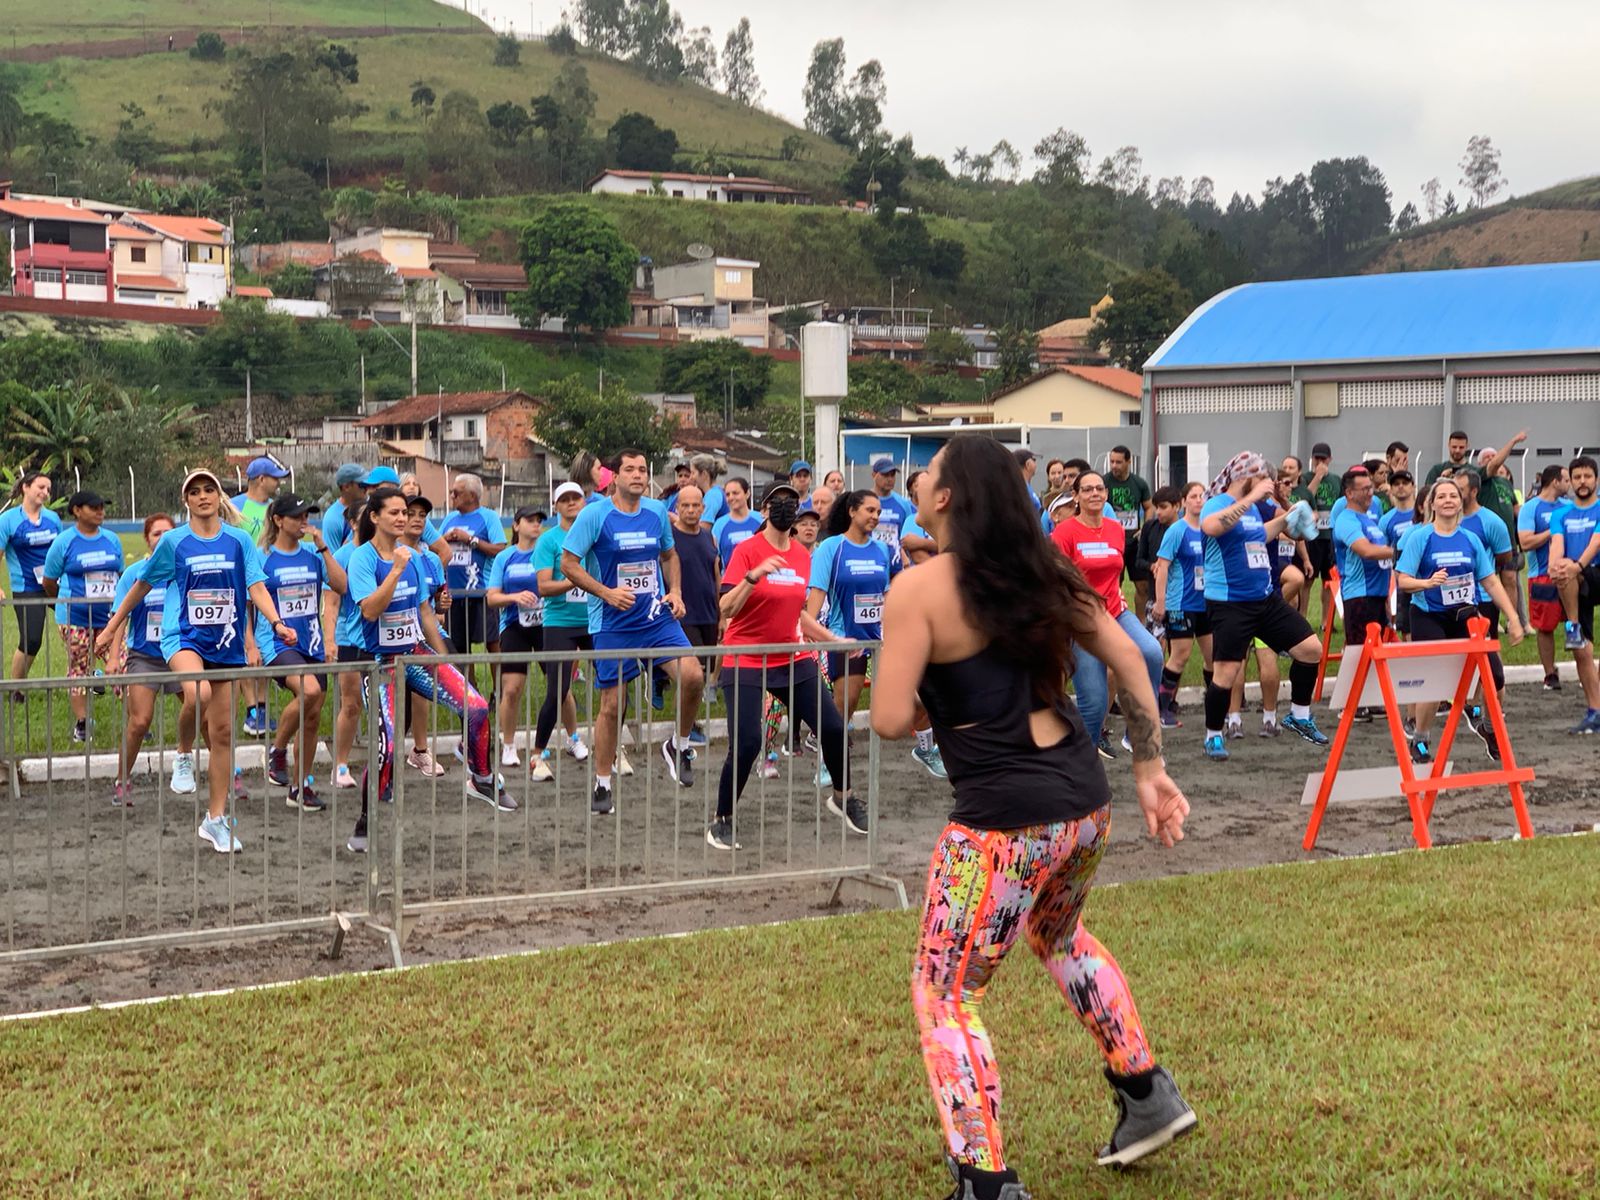 Programação com diversas atrações esportivas em Guararema no 2º Semestre